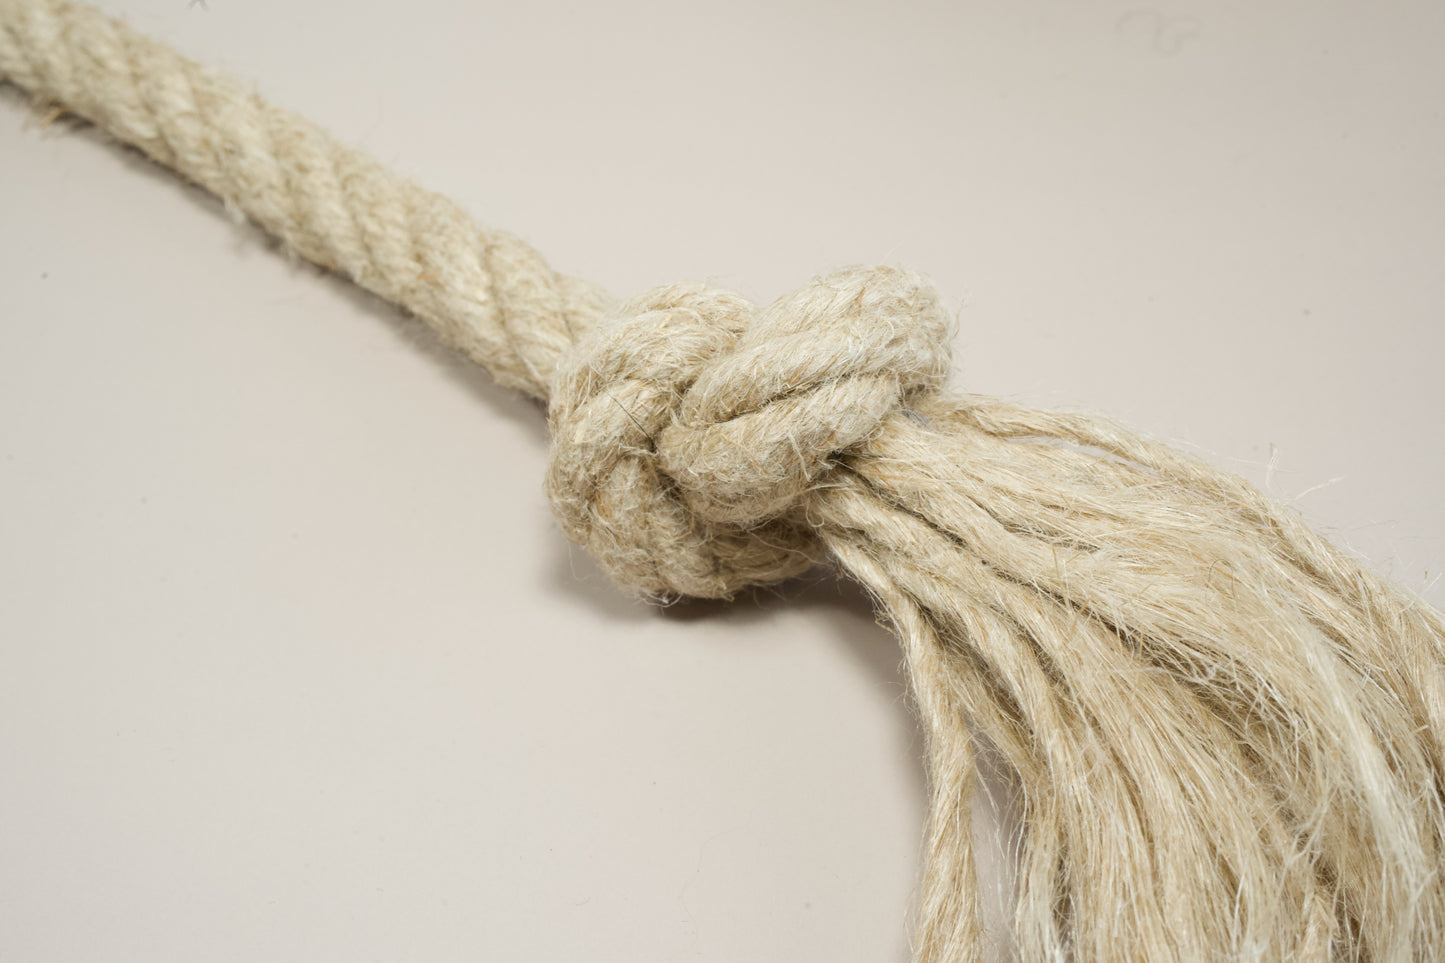 Vue rapprochée du noeud du jouet pour chien en corde de chanvre.